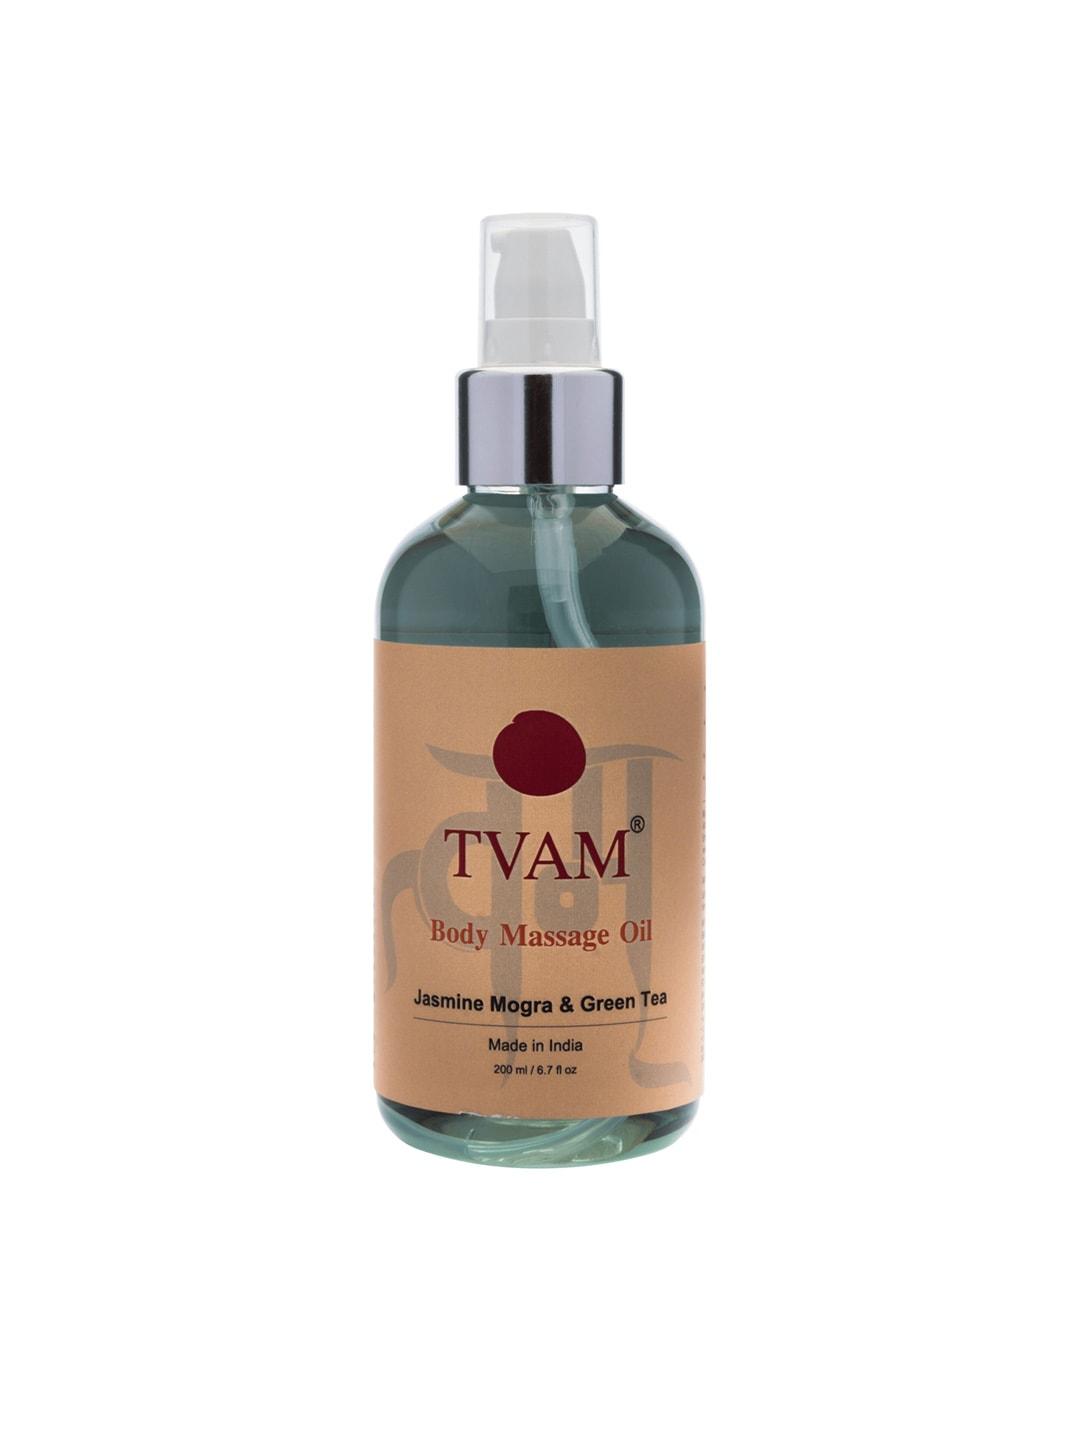 TVAM Body Massage Oil